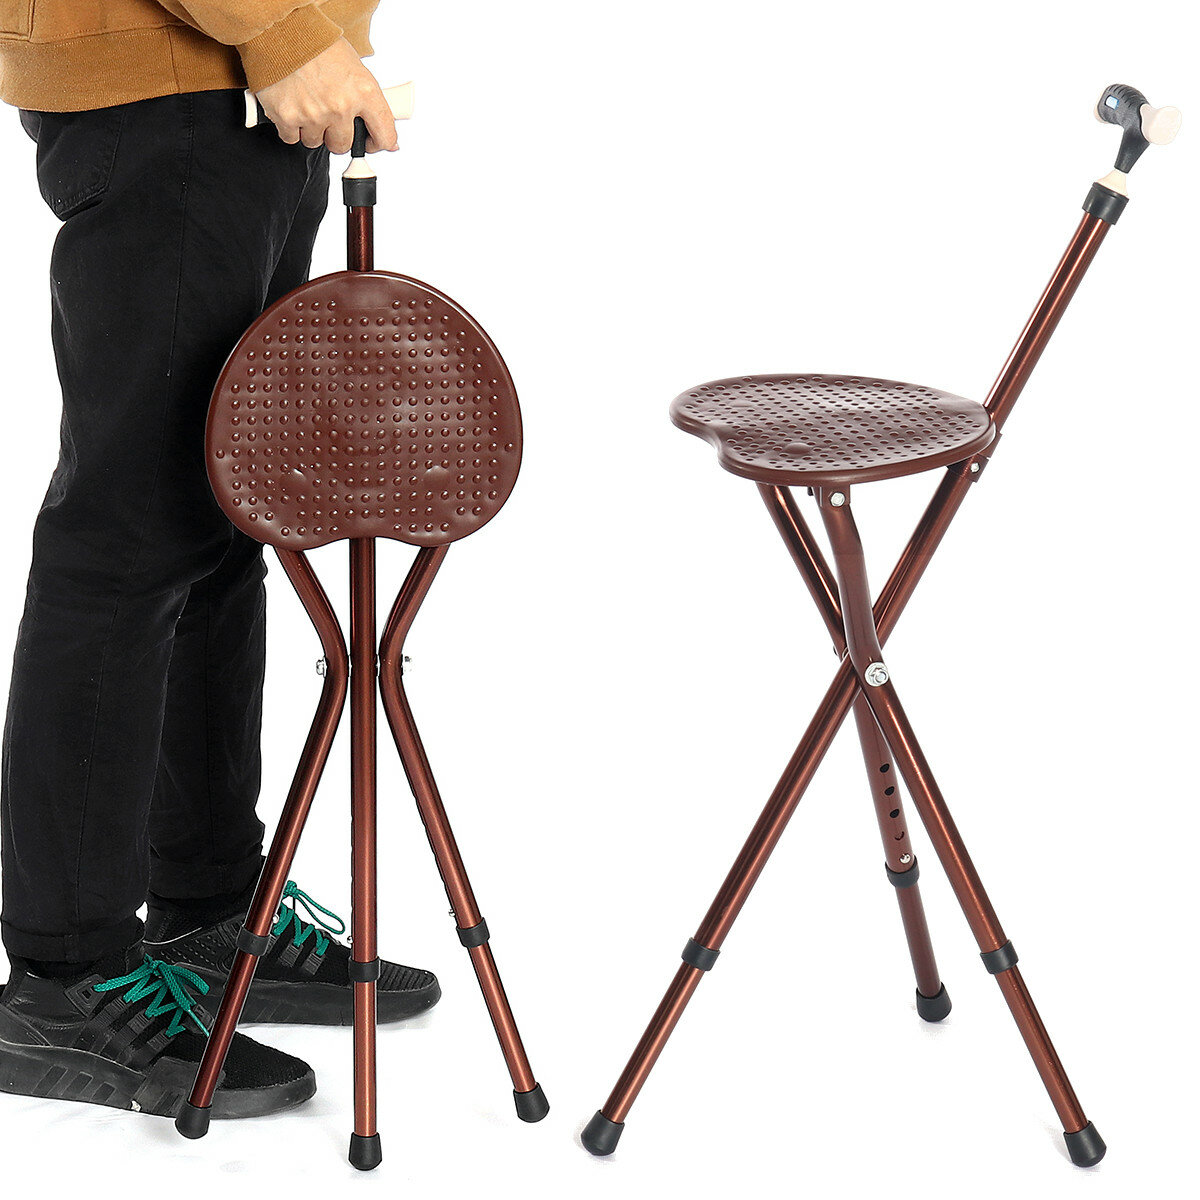 lla plegable con altura ajustable y bastón con luz LED portátil, silla plegable para caminar para ancianos.